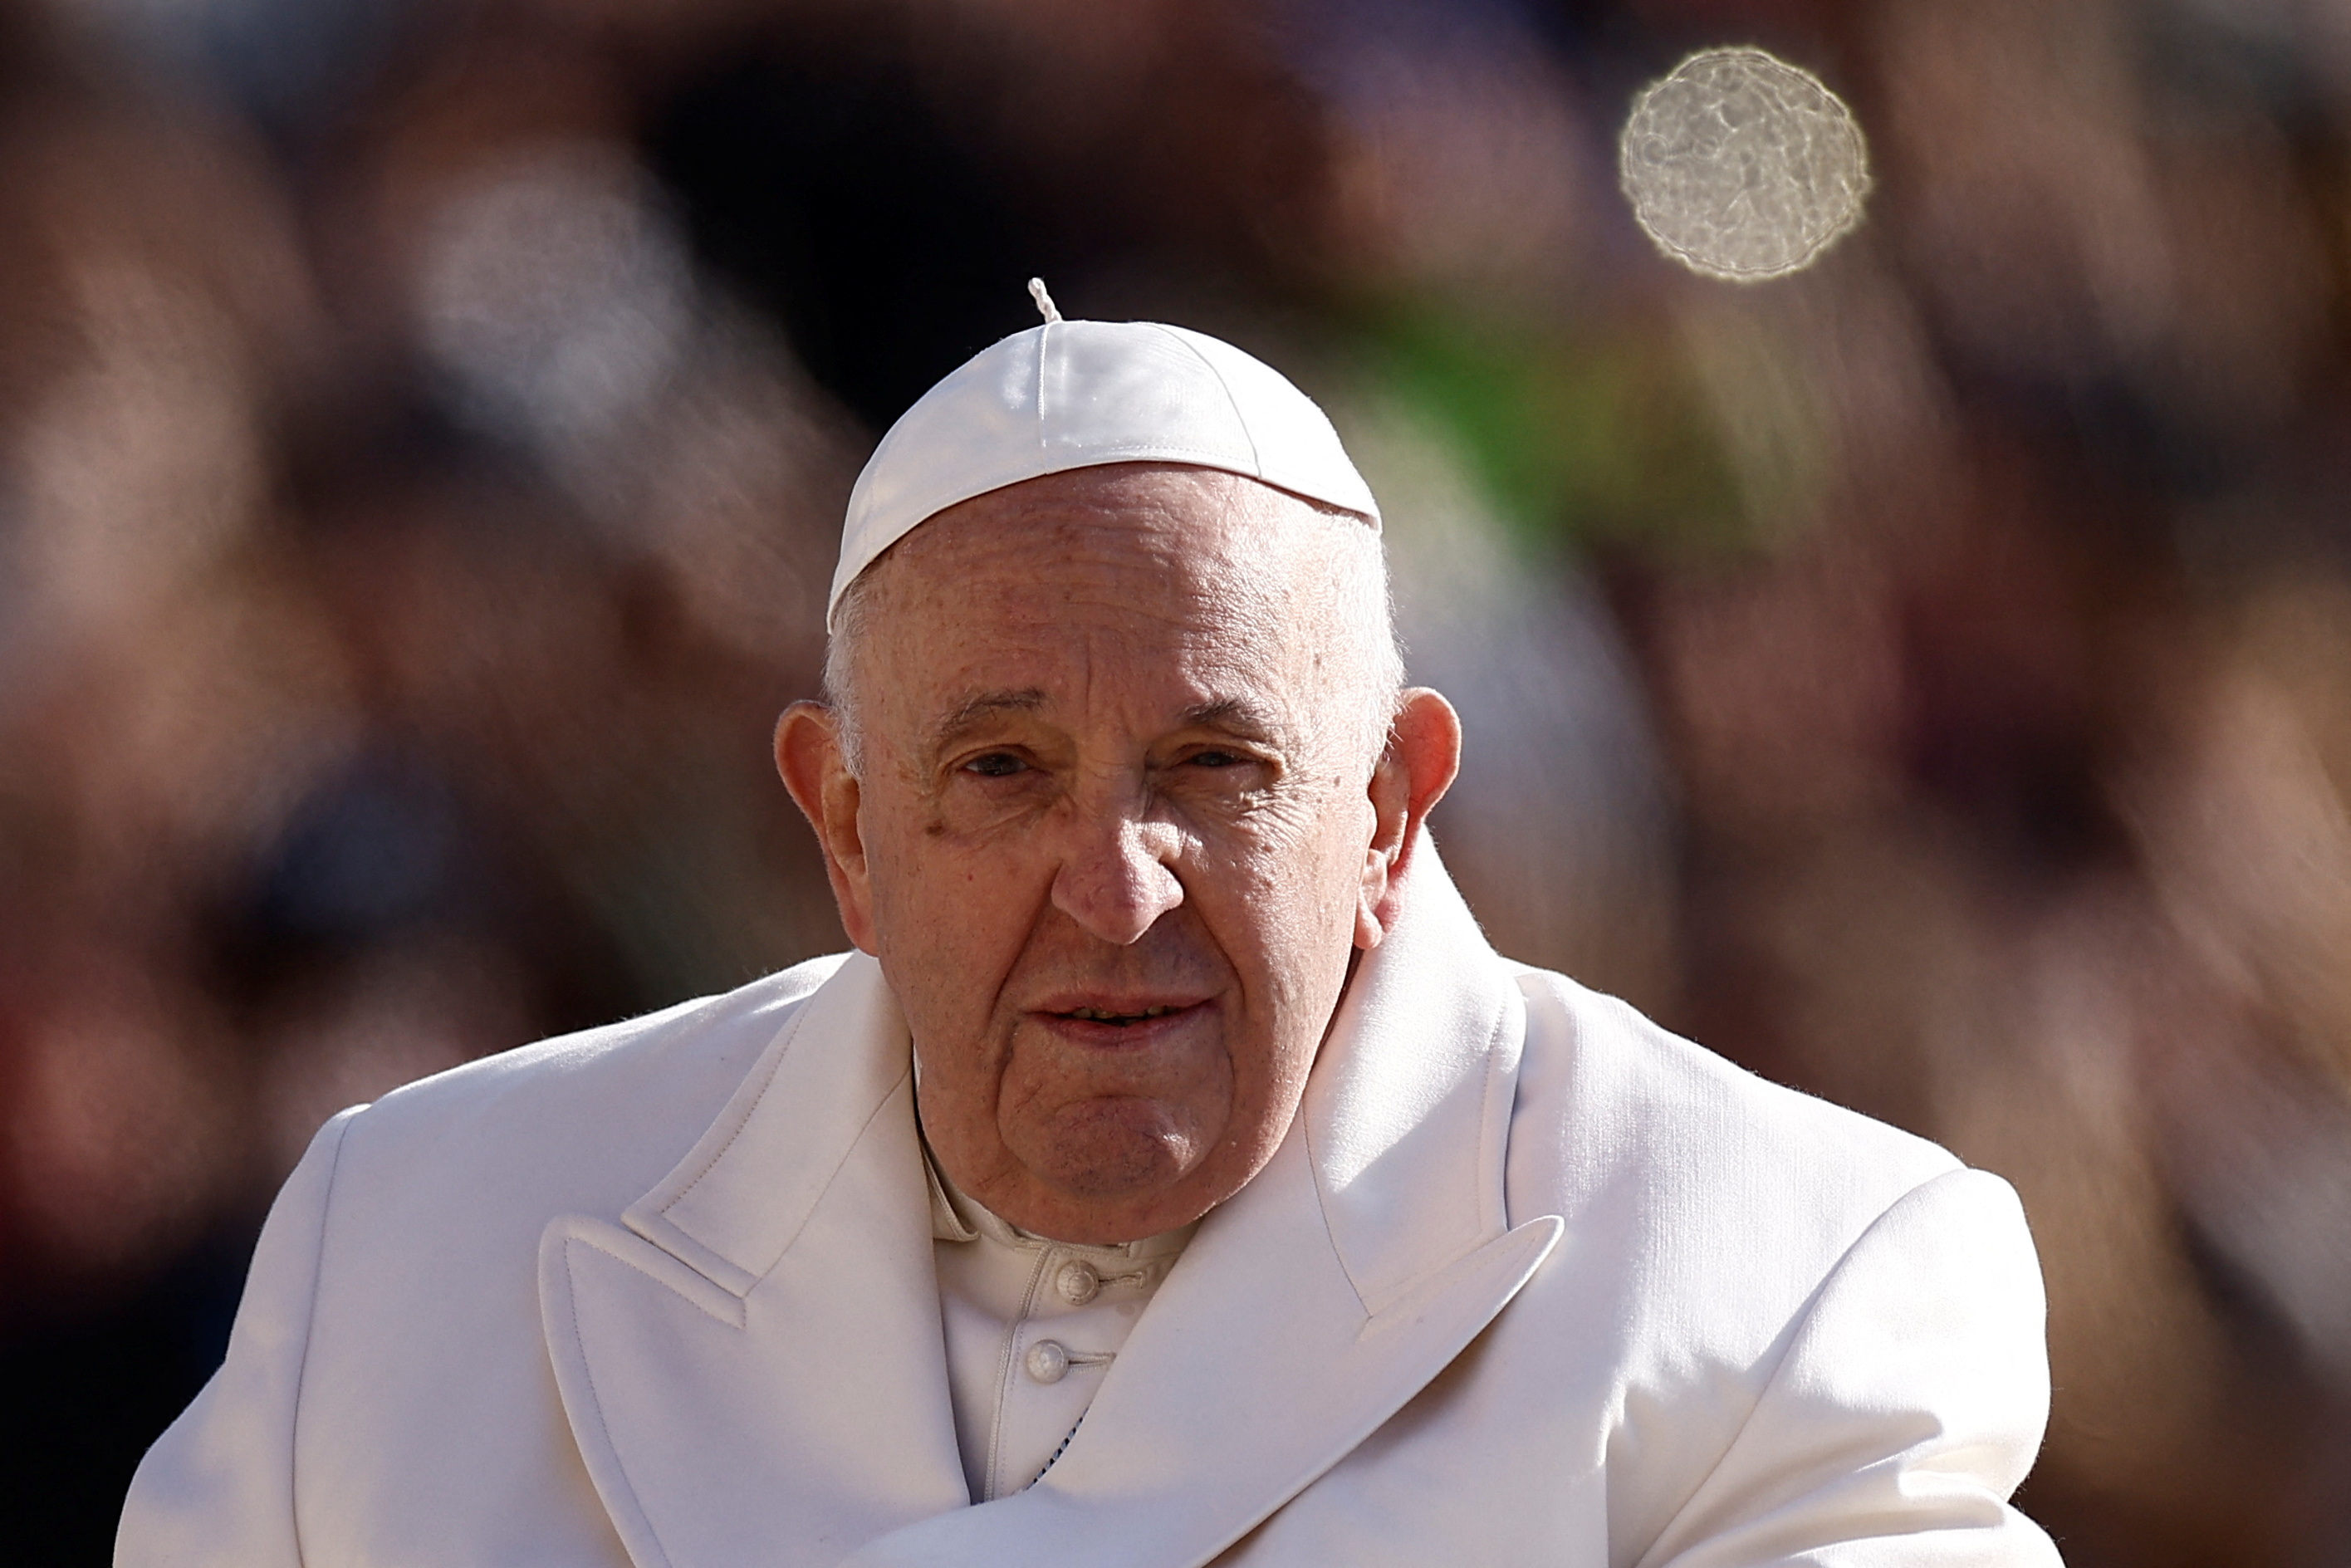 El papa Francisco fue hospitalizado para realizar un control médico programado